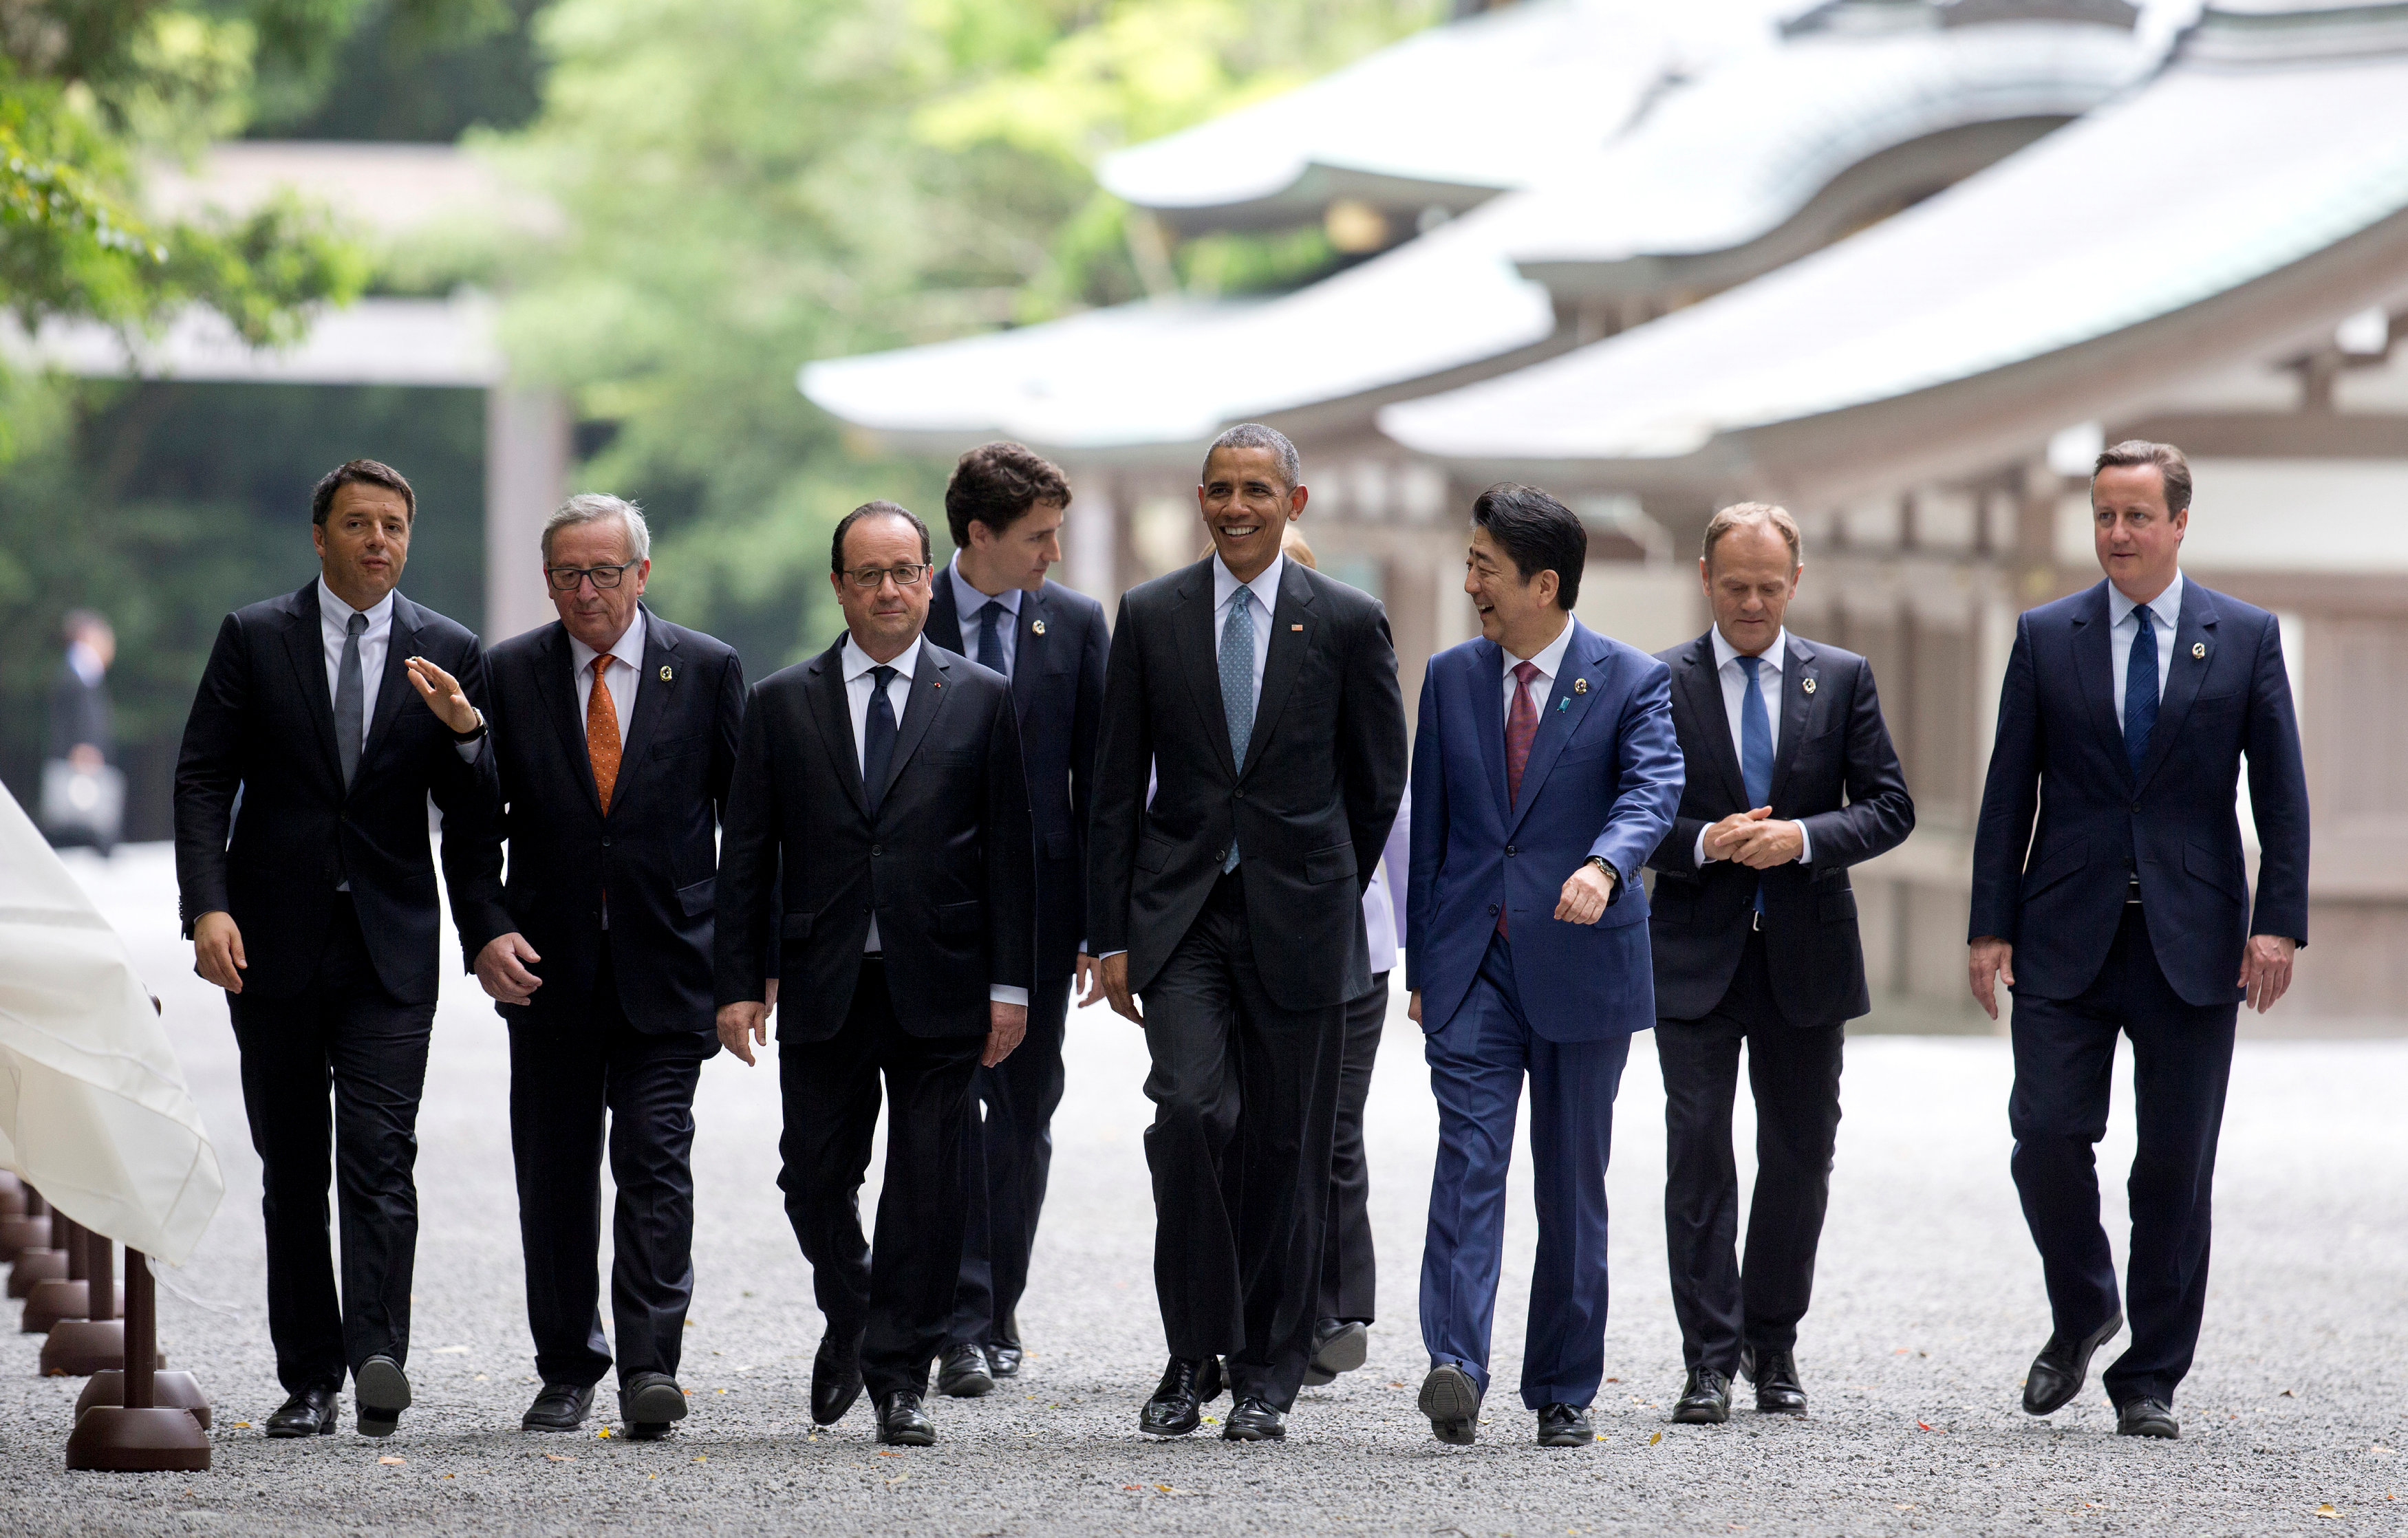 Los miembros de siete países capitalistas del mundo celebran en Ise-Shima, Japón, la cumbre G7.